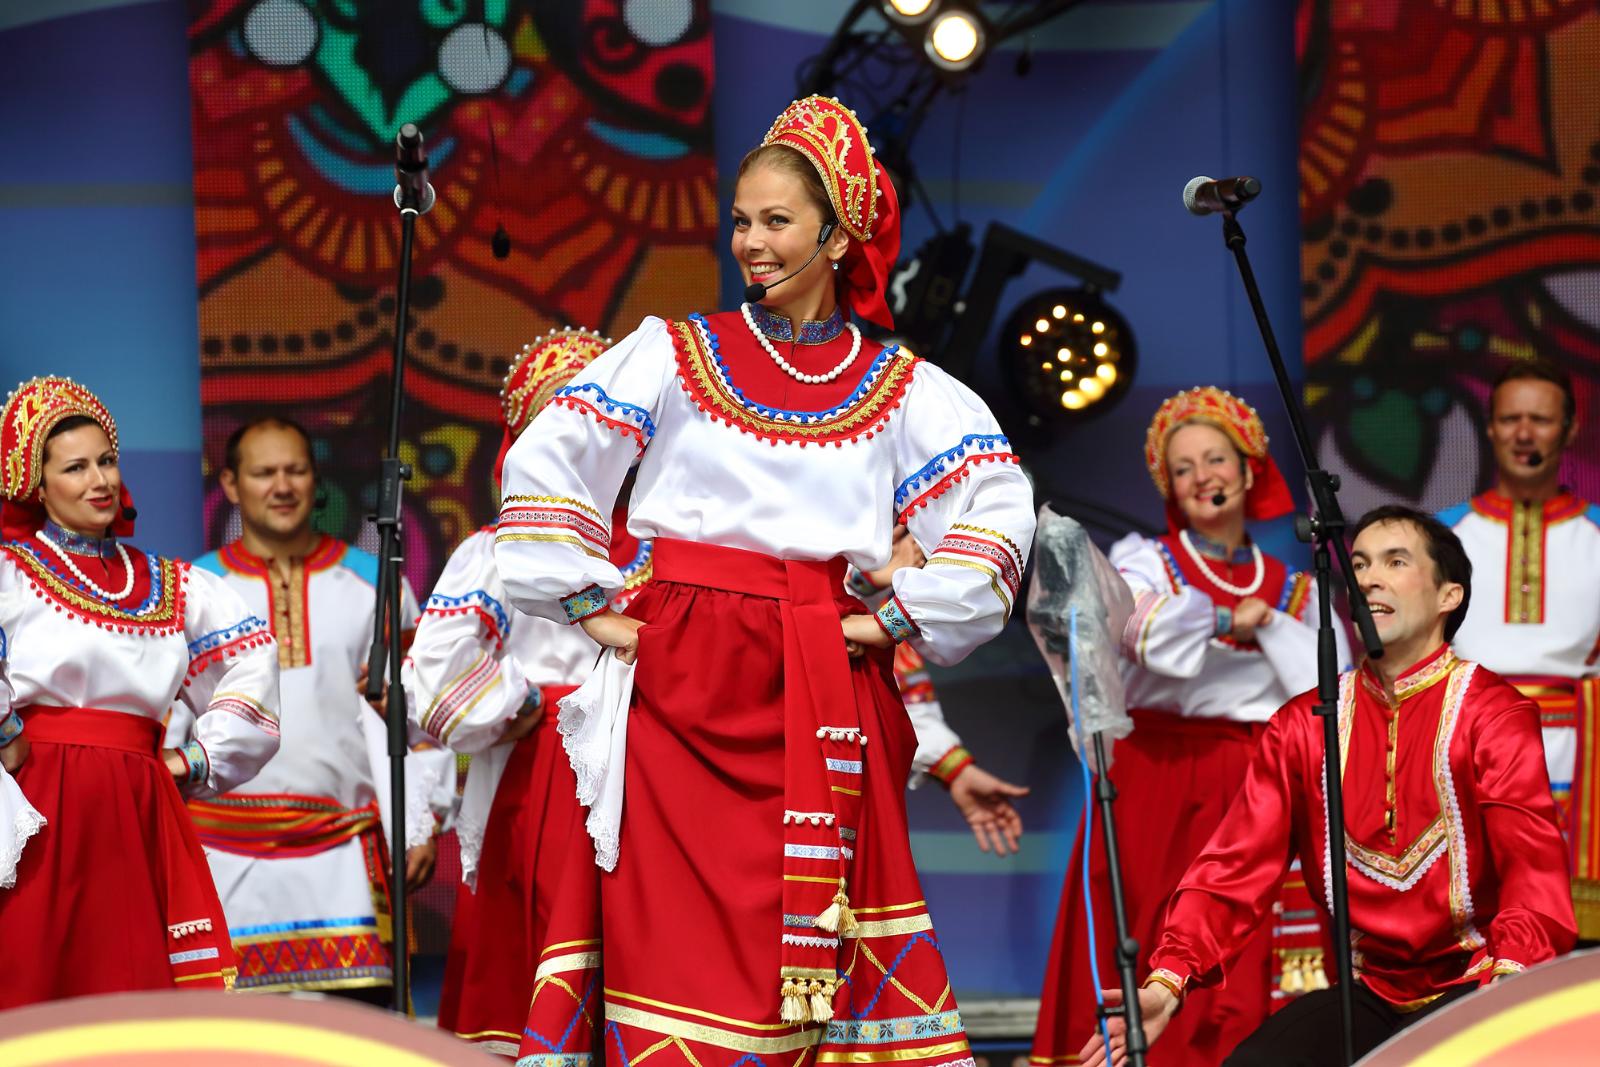 Широкая ярмарка, красочные выступления, национальная кухня: в Коломенском пройдет десятый юбилейный фестиваль «Русское поле»